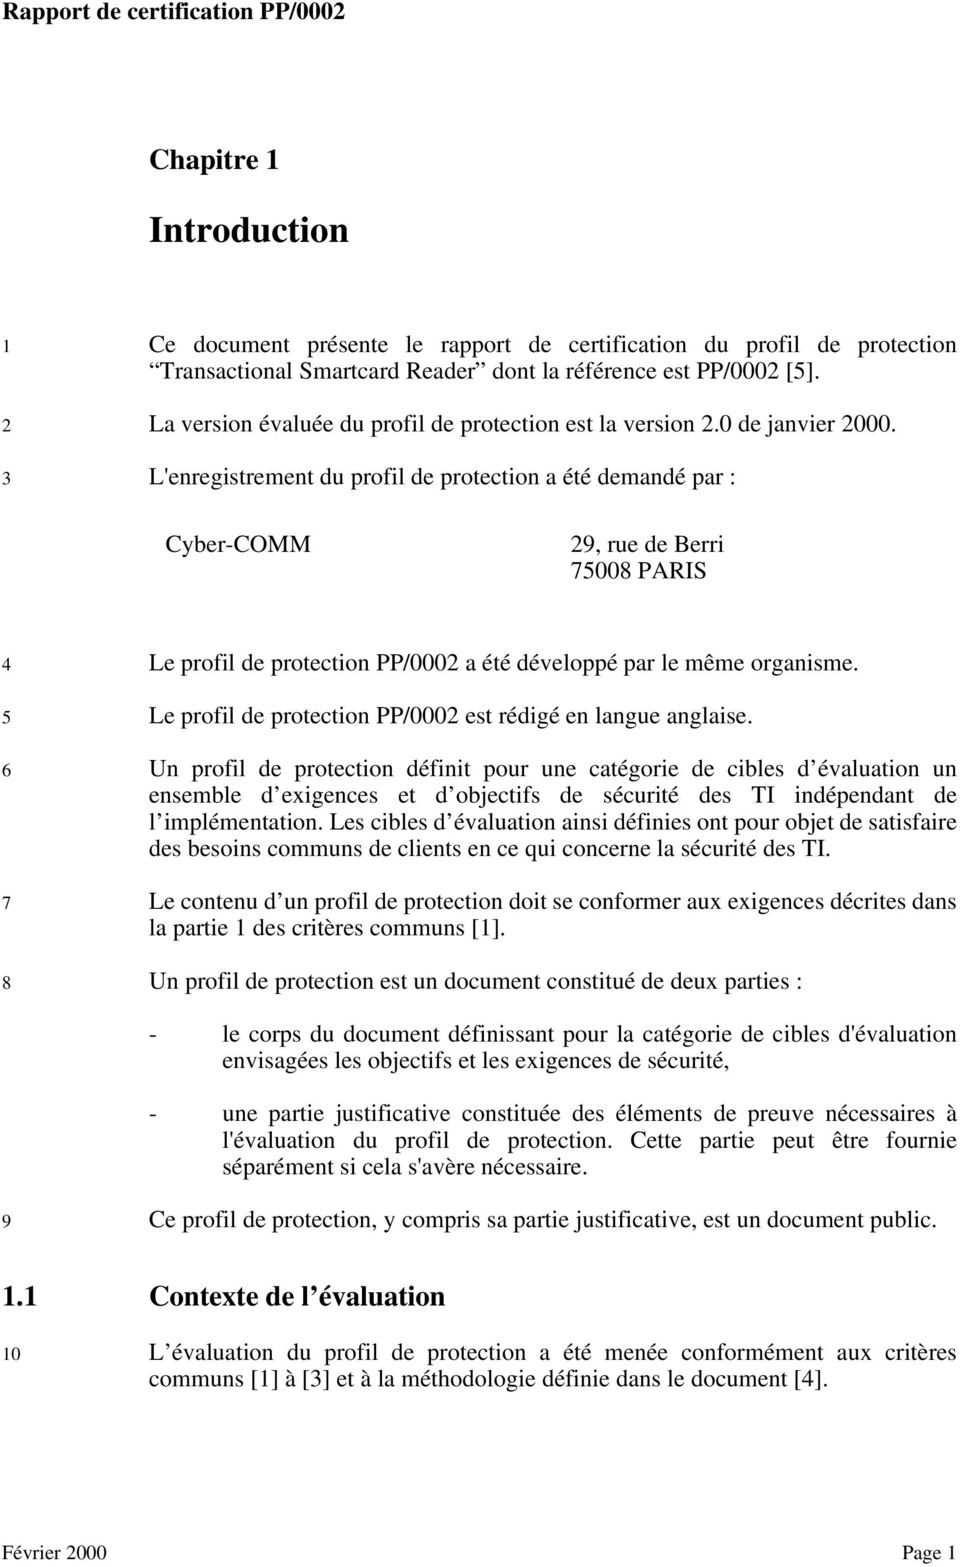 3 L'enregistrement du profil de protection a été demandé par : Cyber-COMM 29, rue de Berri 75008 PARIS 4 Le profil de protection PP/0002 a été développé par le même organisme.